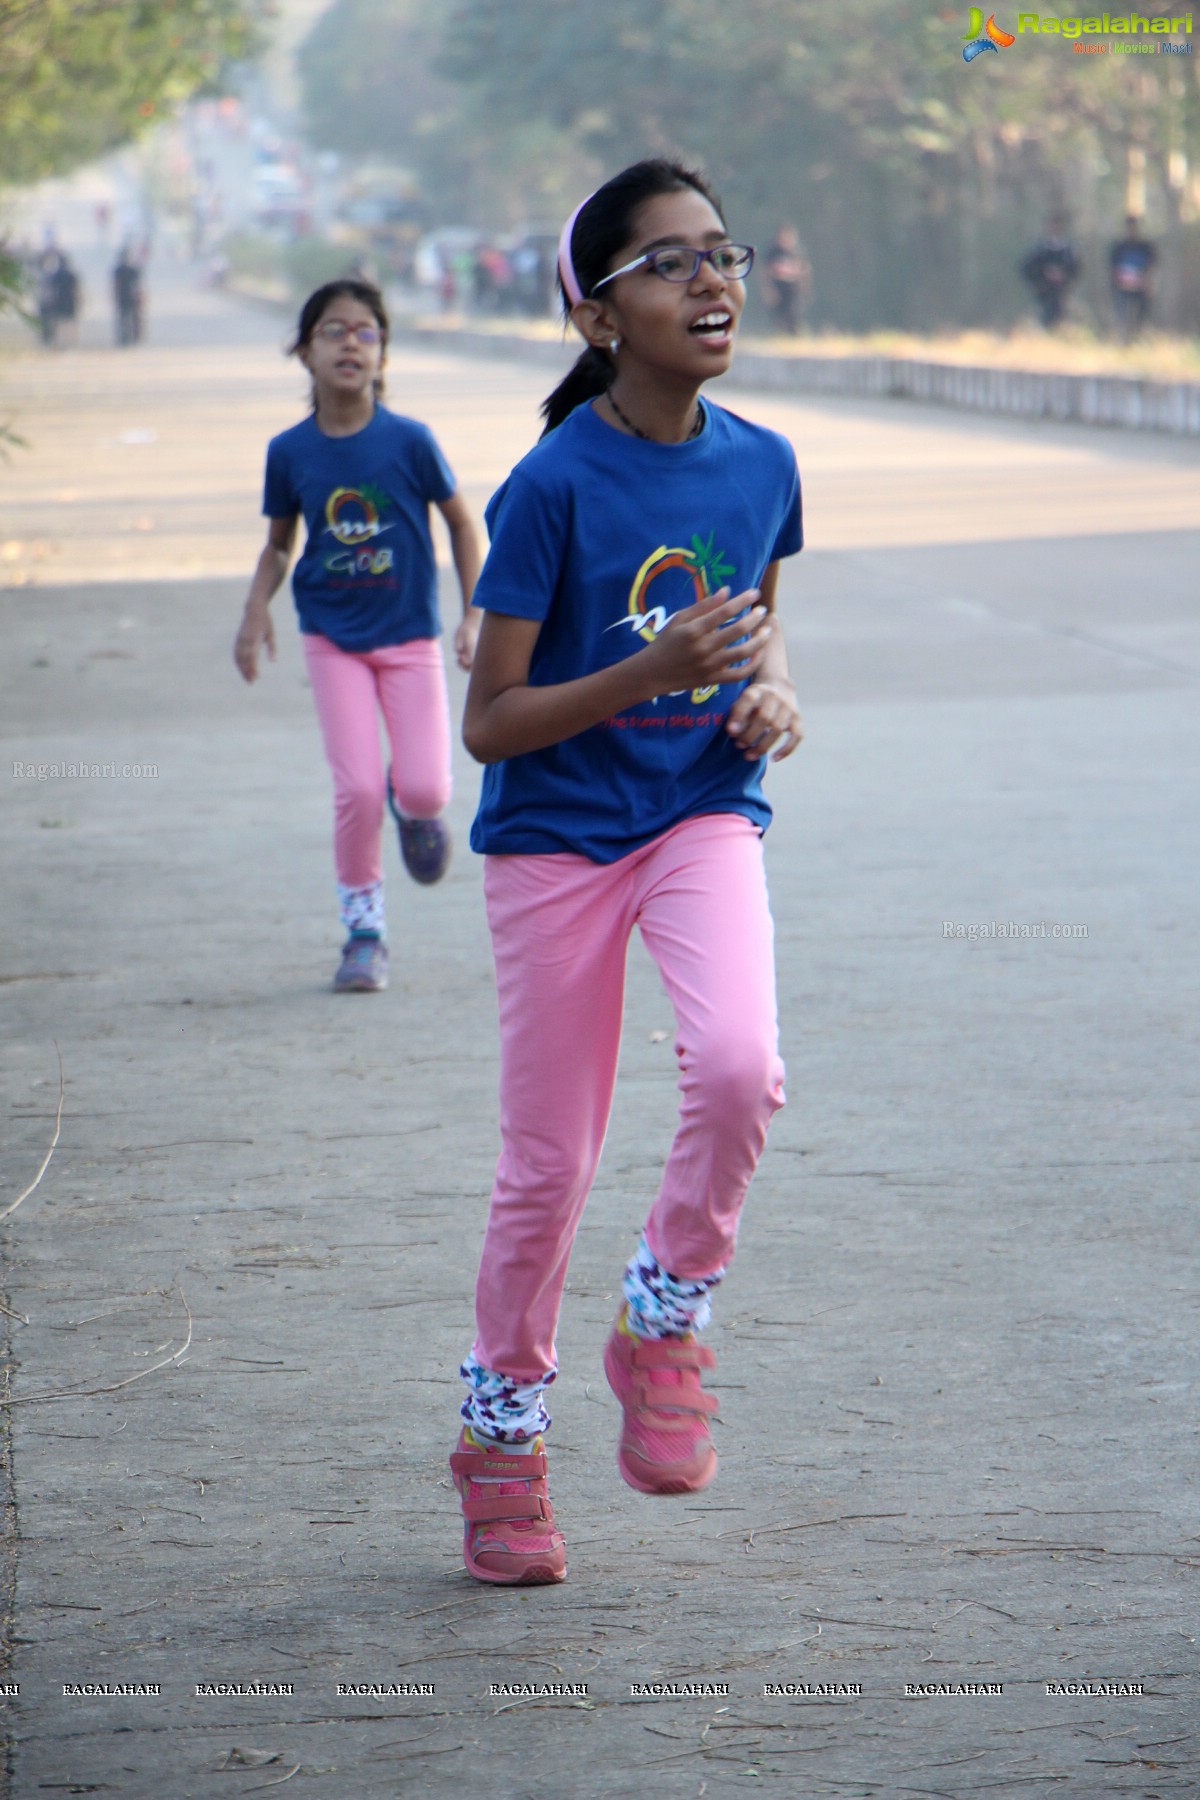 Seva Bharathi's  “Run for Girl Child” Corporate & Family 5k/10k Run